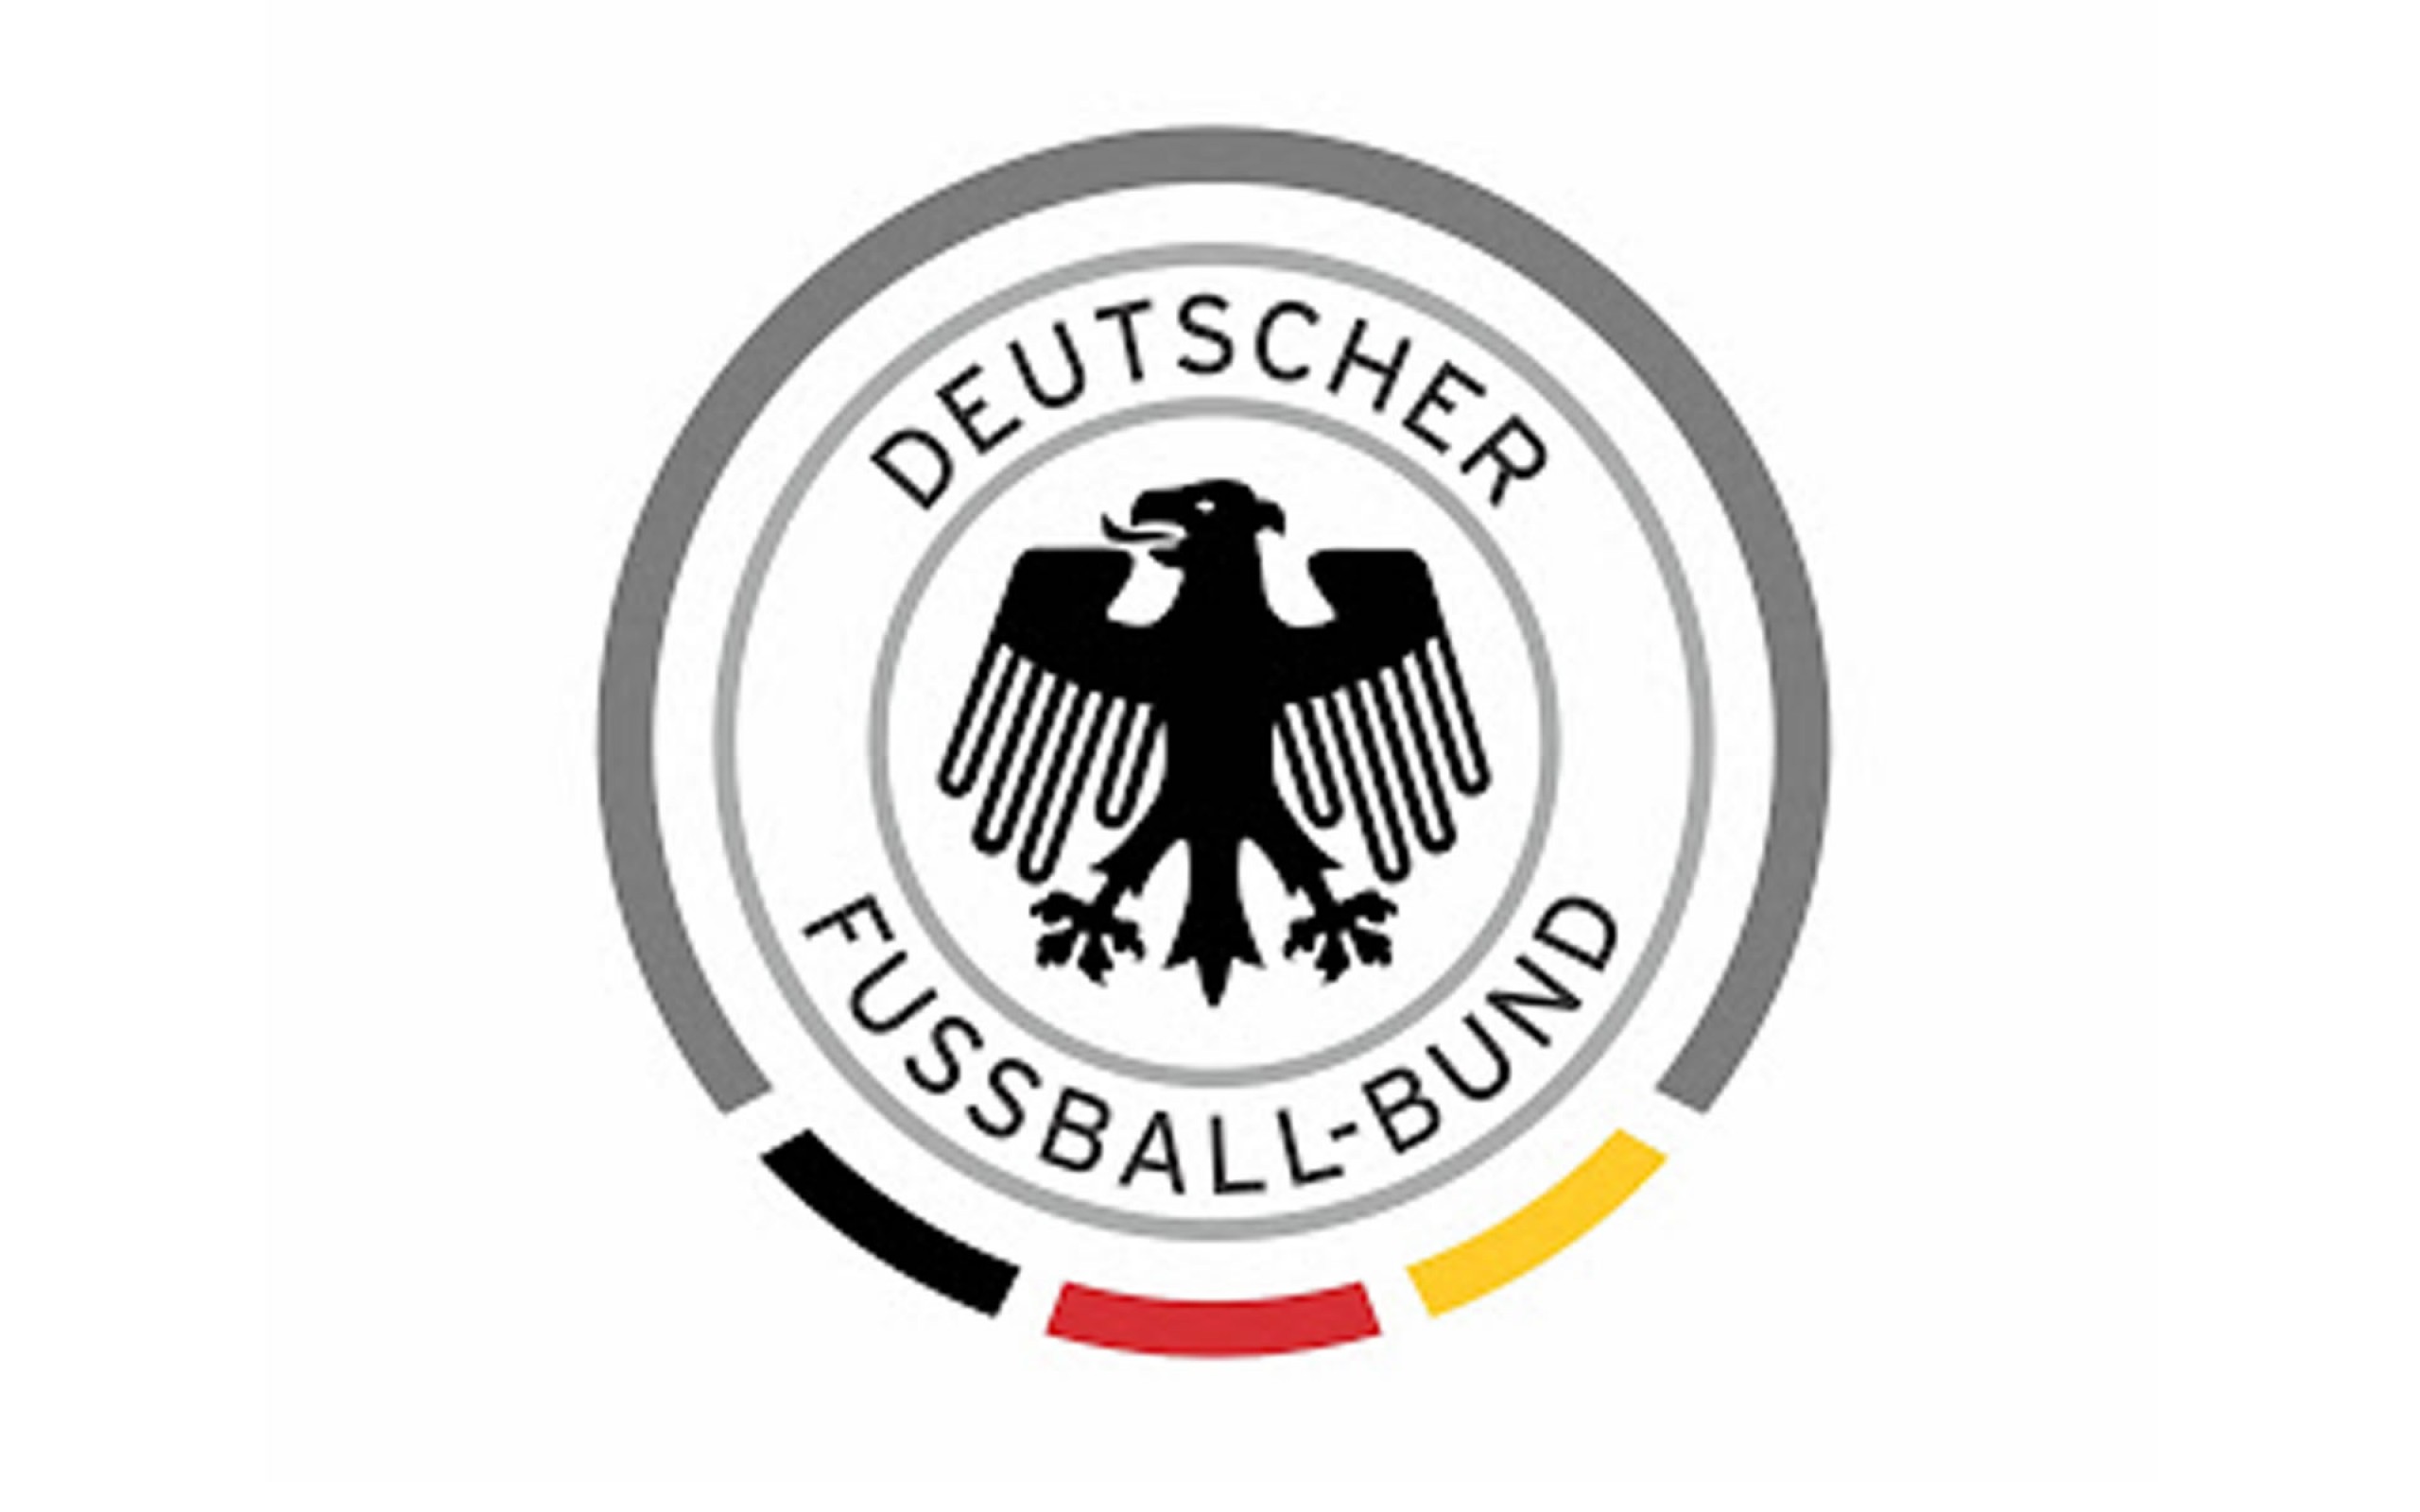 Controversia por el águila de la selección alemana - Futbol Sapiens